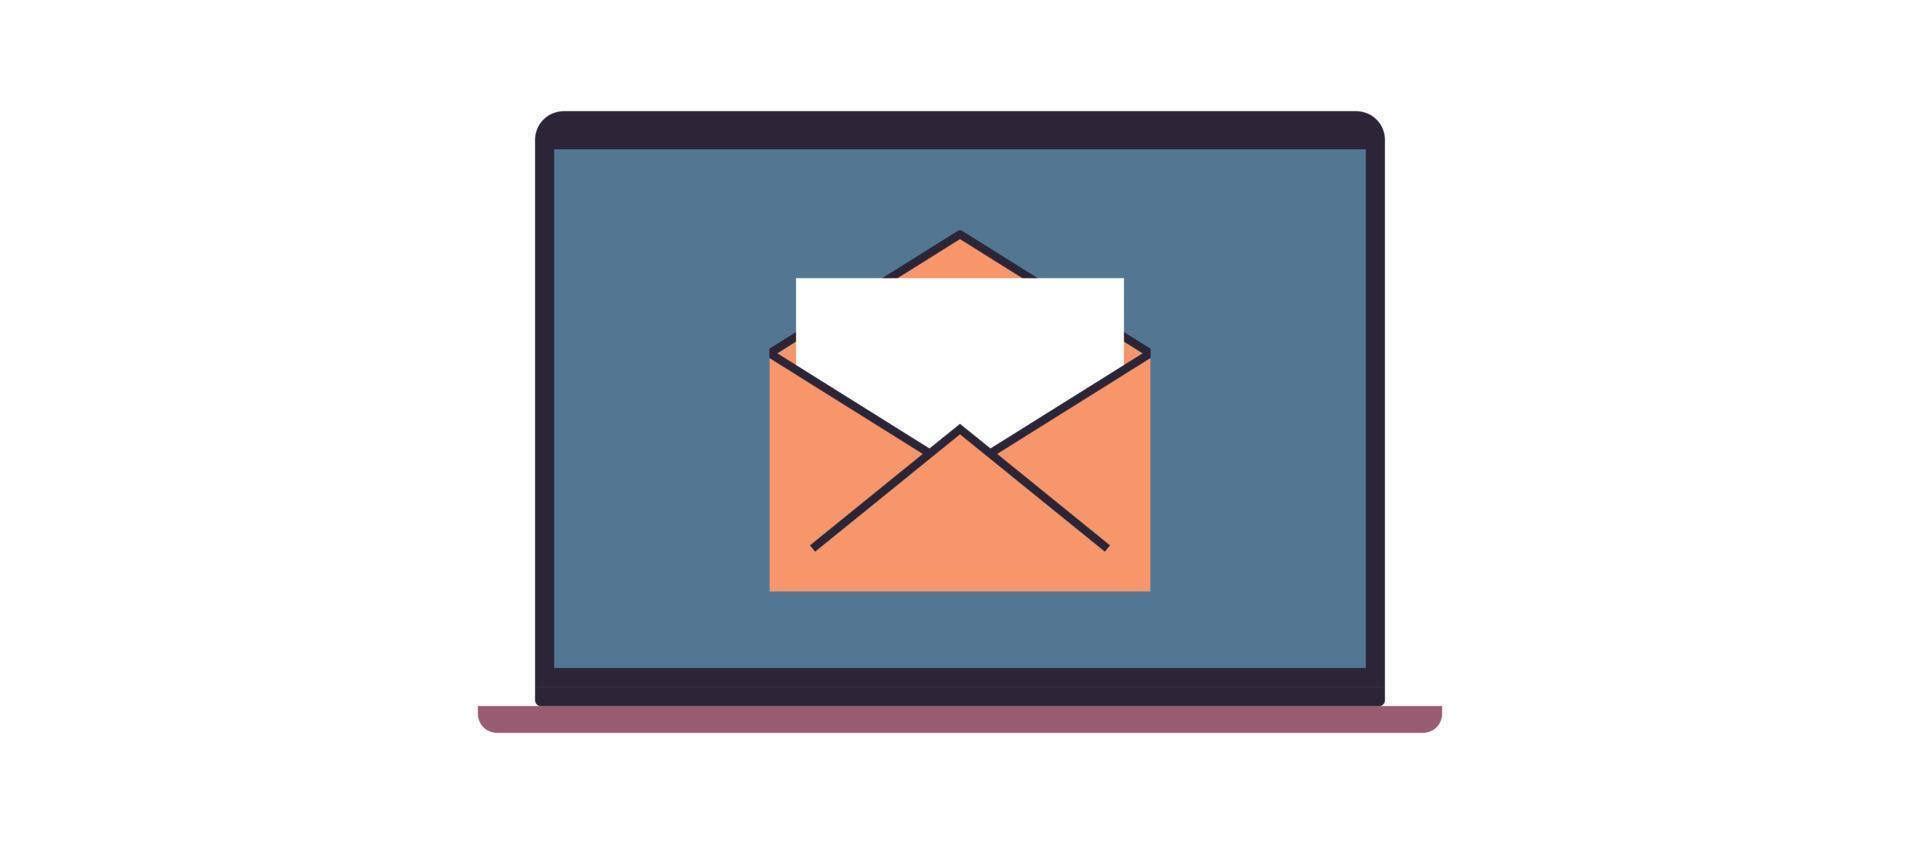 e-mail e casella di posta elettronica messaggio e-mail comunicazione aziendale illustrazione vettoriale piatta.